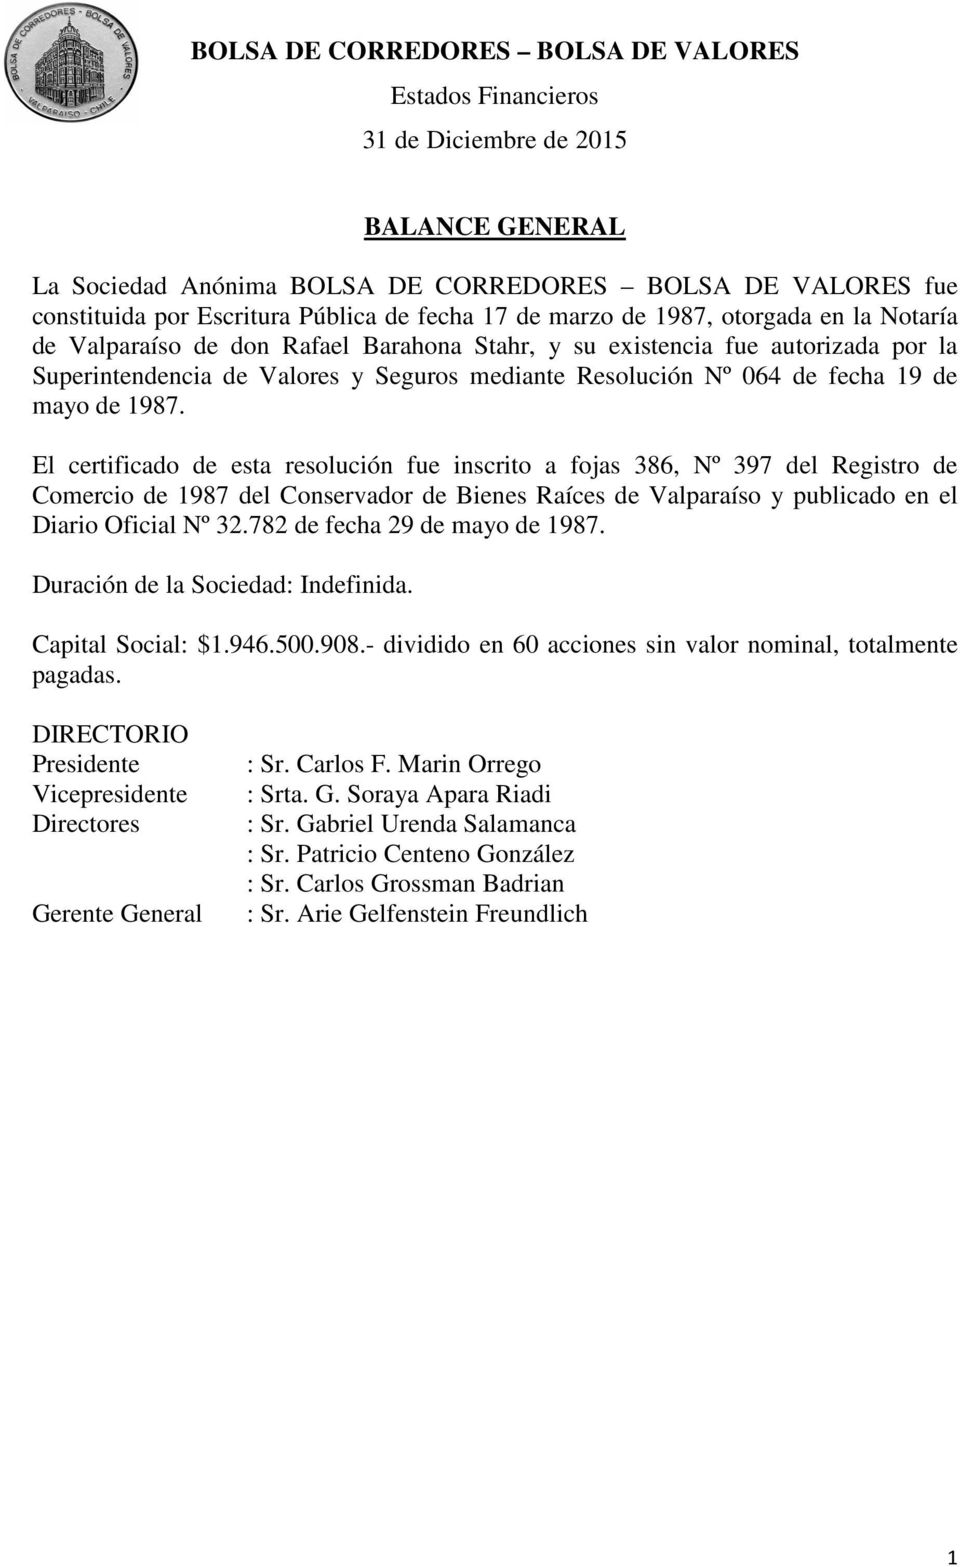 El certificado de esta resolución fue inscrito a fojas 386, Nº 397 del Registro de Comercio de 1987 del Conservador de Bienes Raíces de Valparaíso y publicado en el Diario Oficial Nº 32.